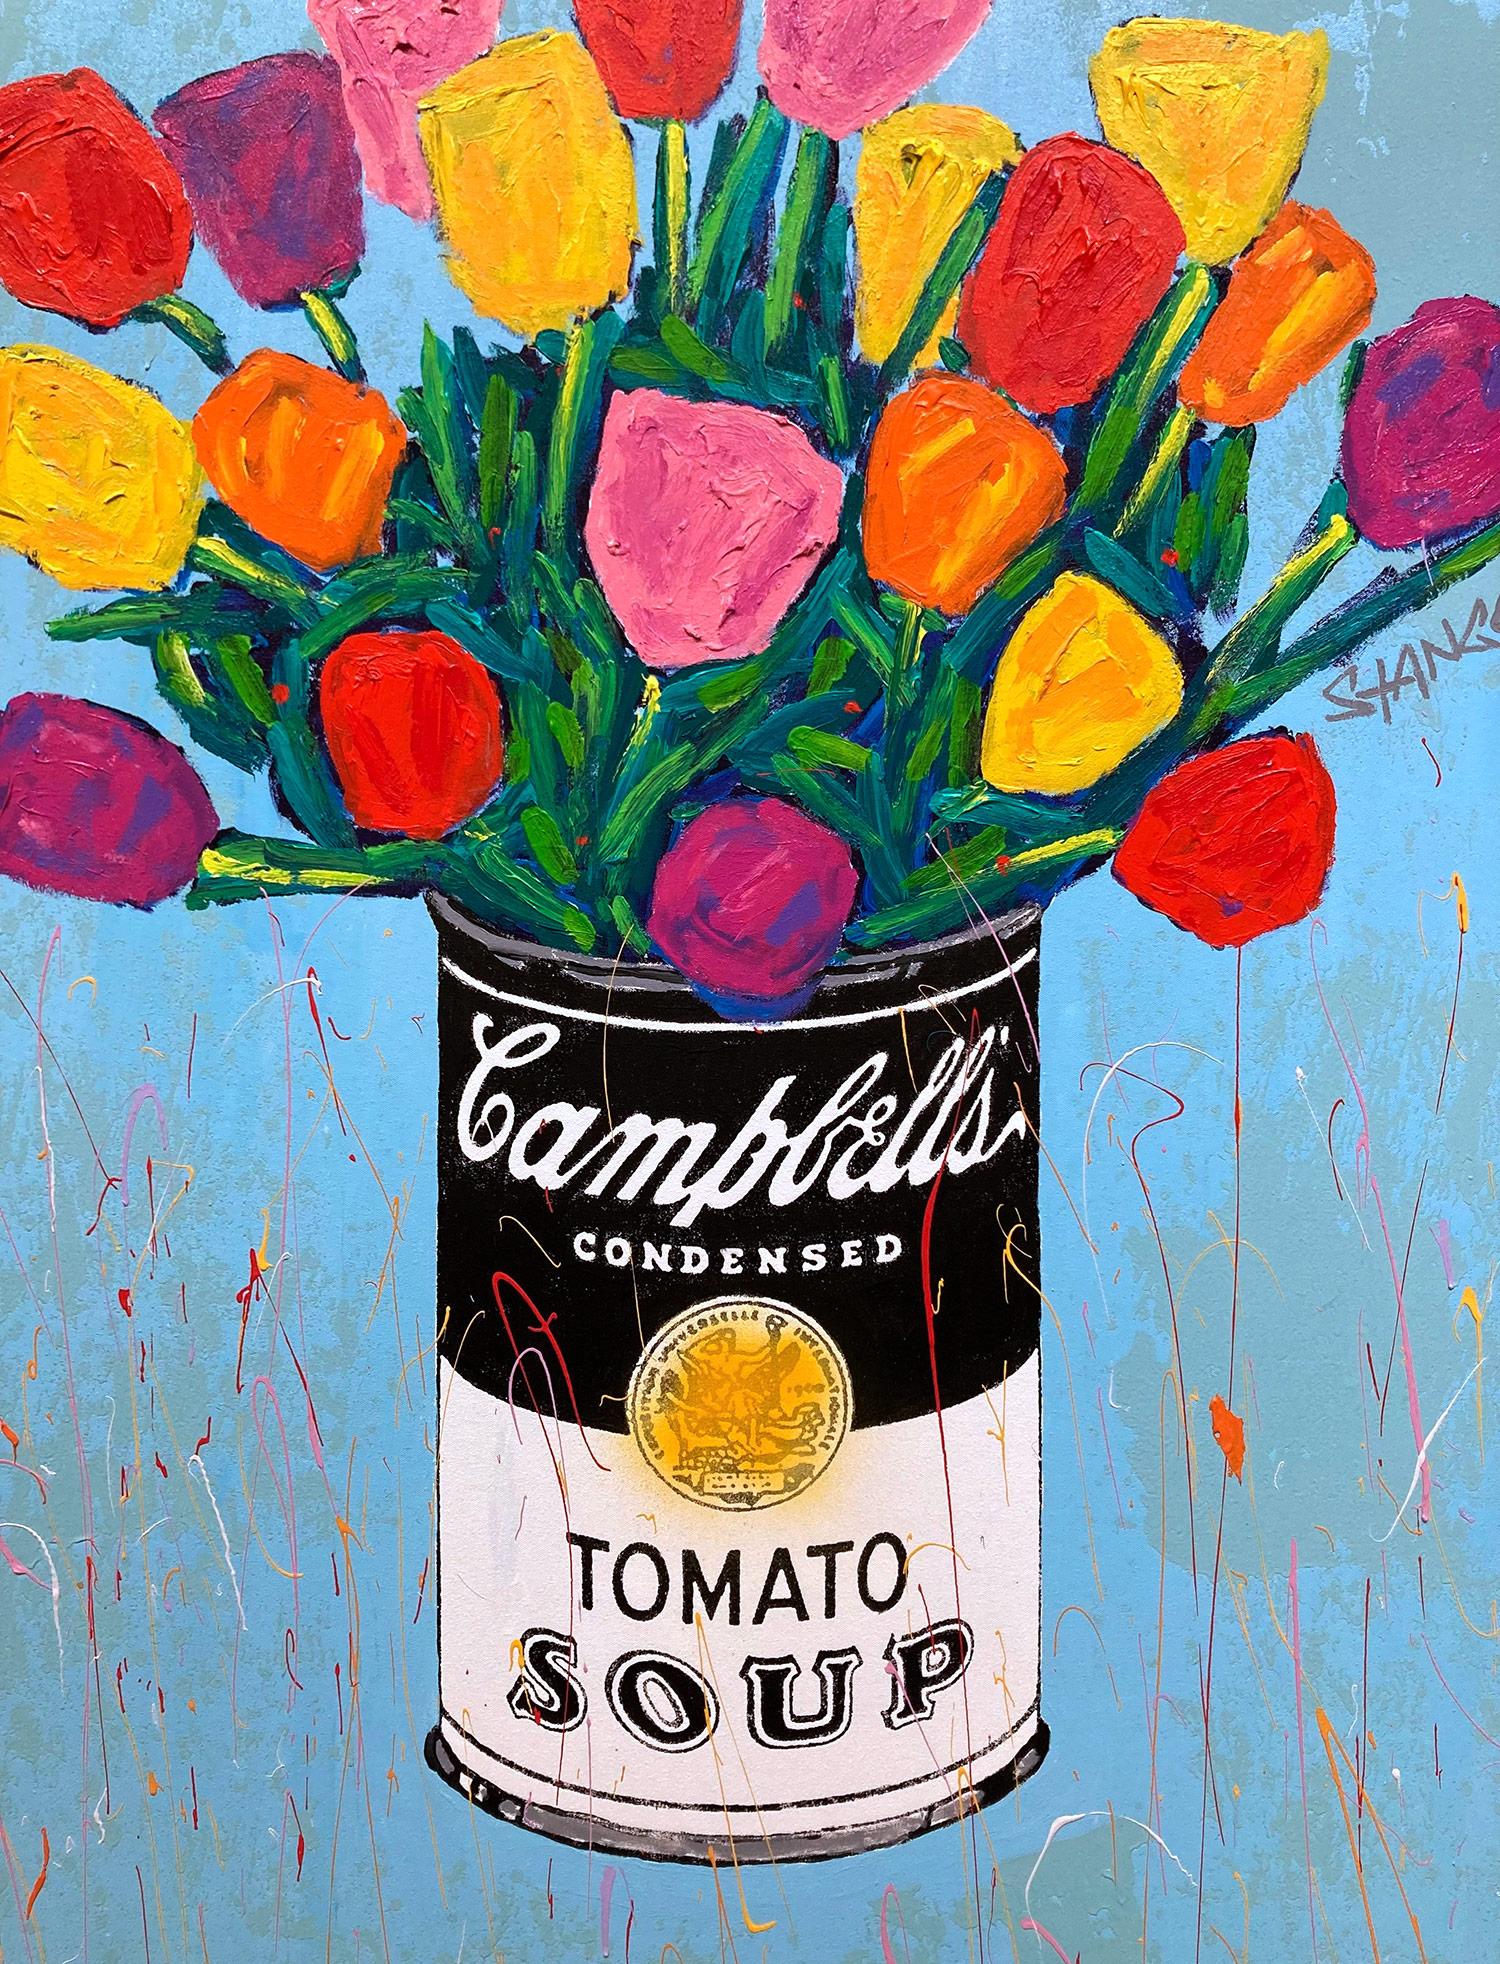 Peinture acrylique Pop Art Campbells Soup Can & Tulipe Flowers - Painting de John Stango